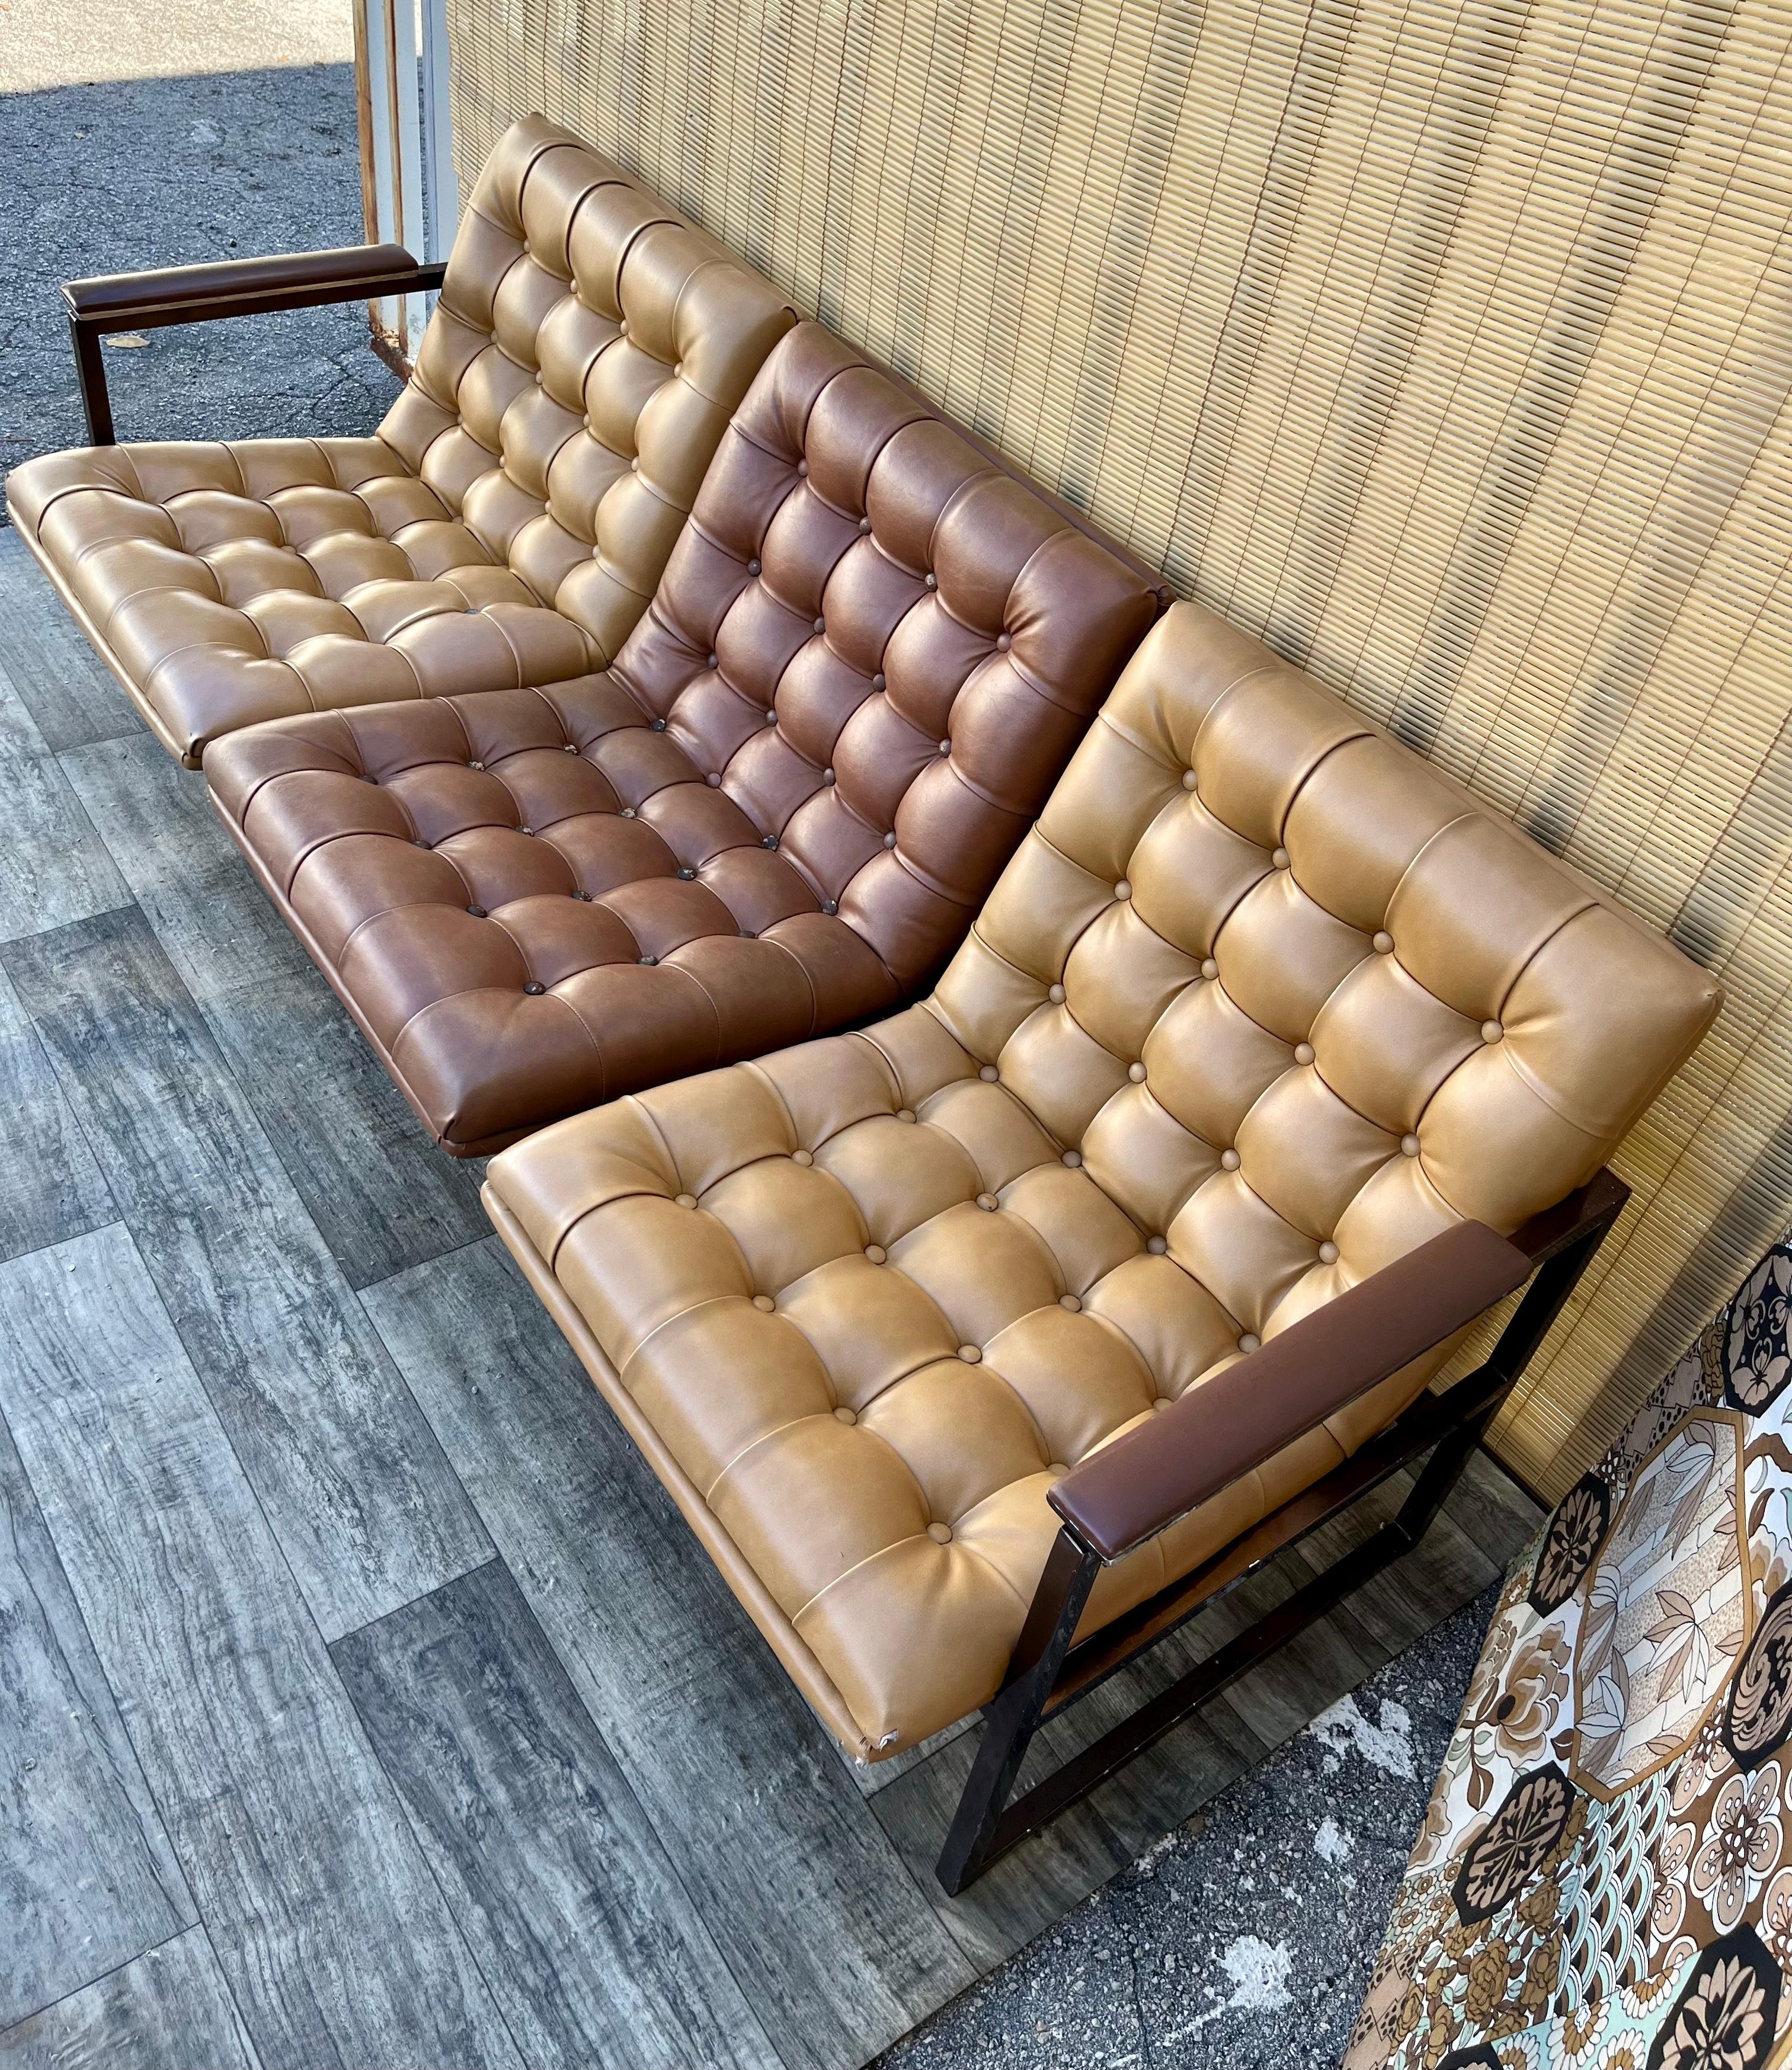 1970s sofa styles